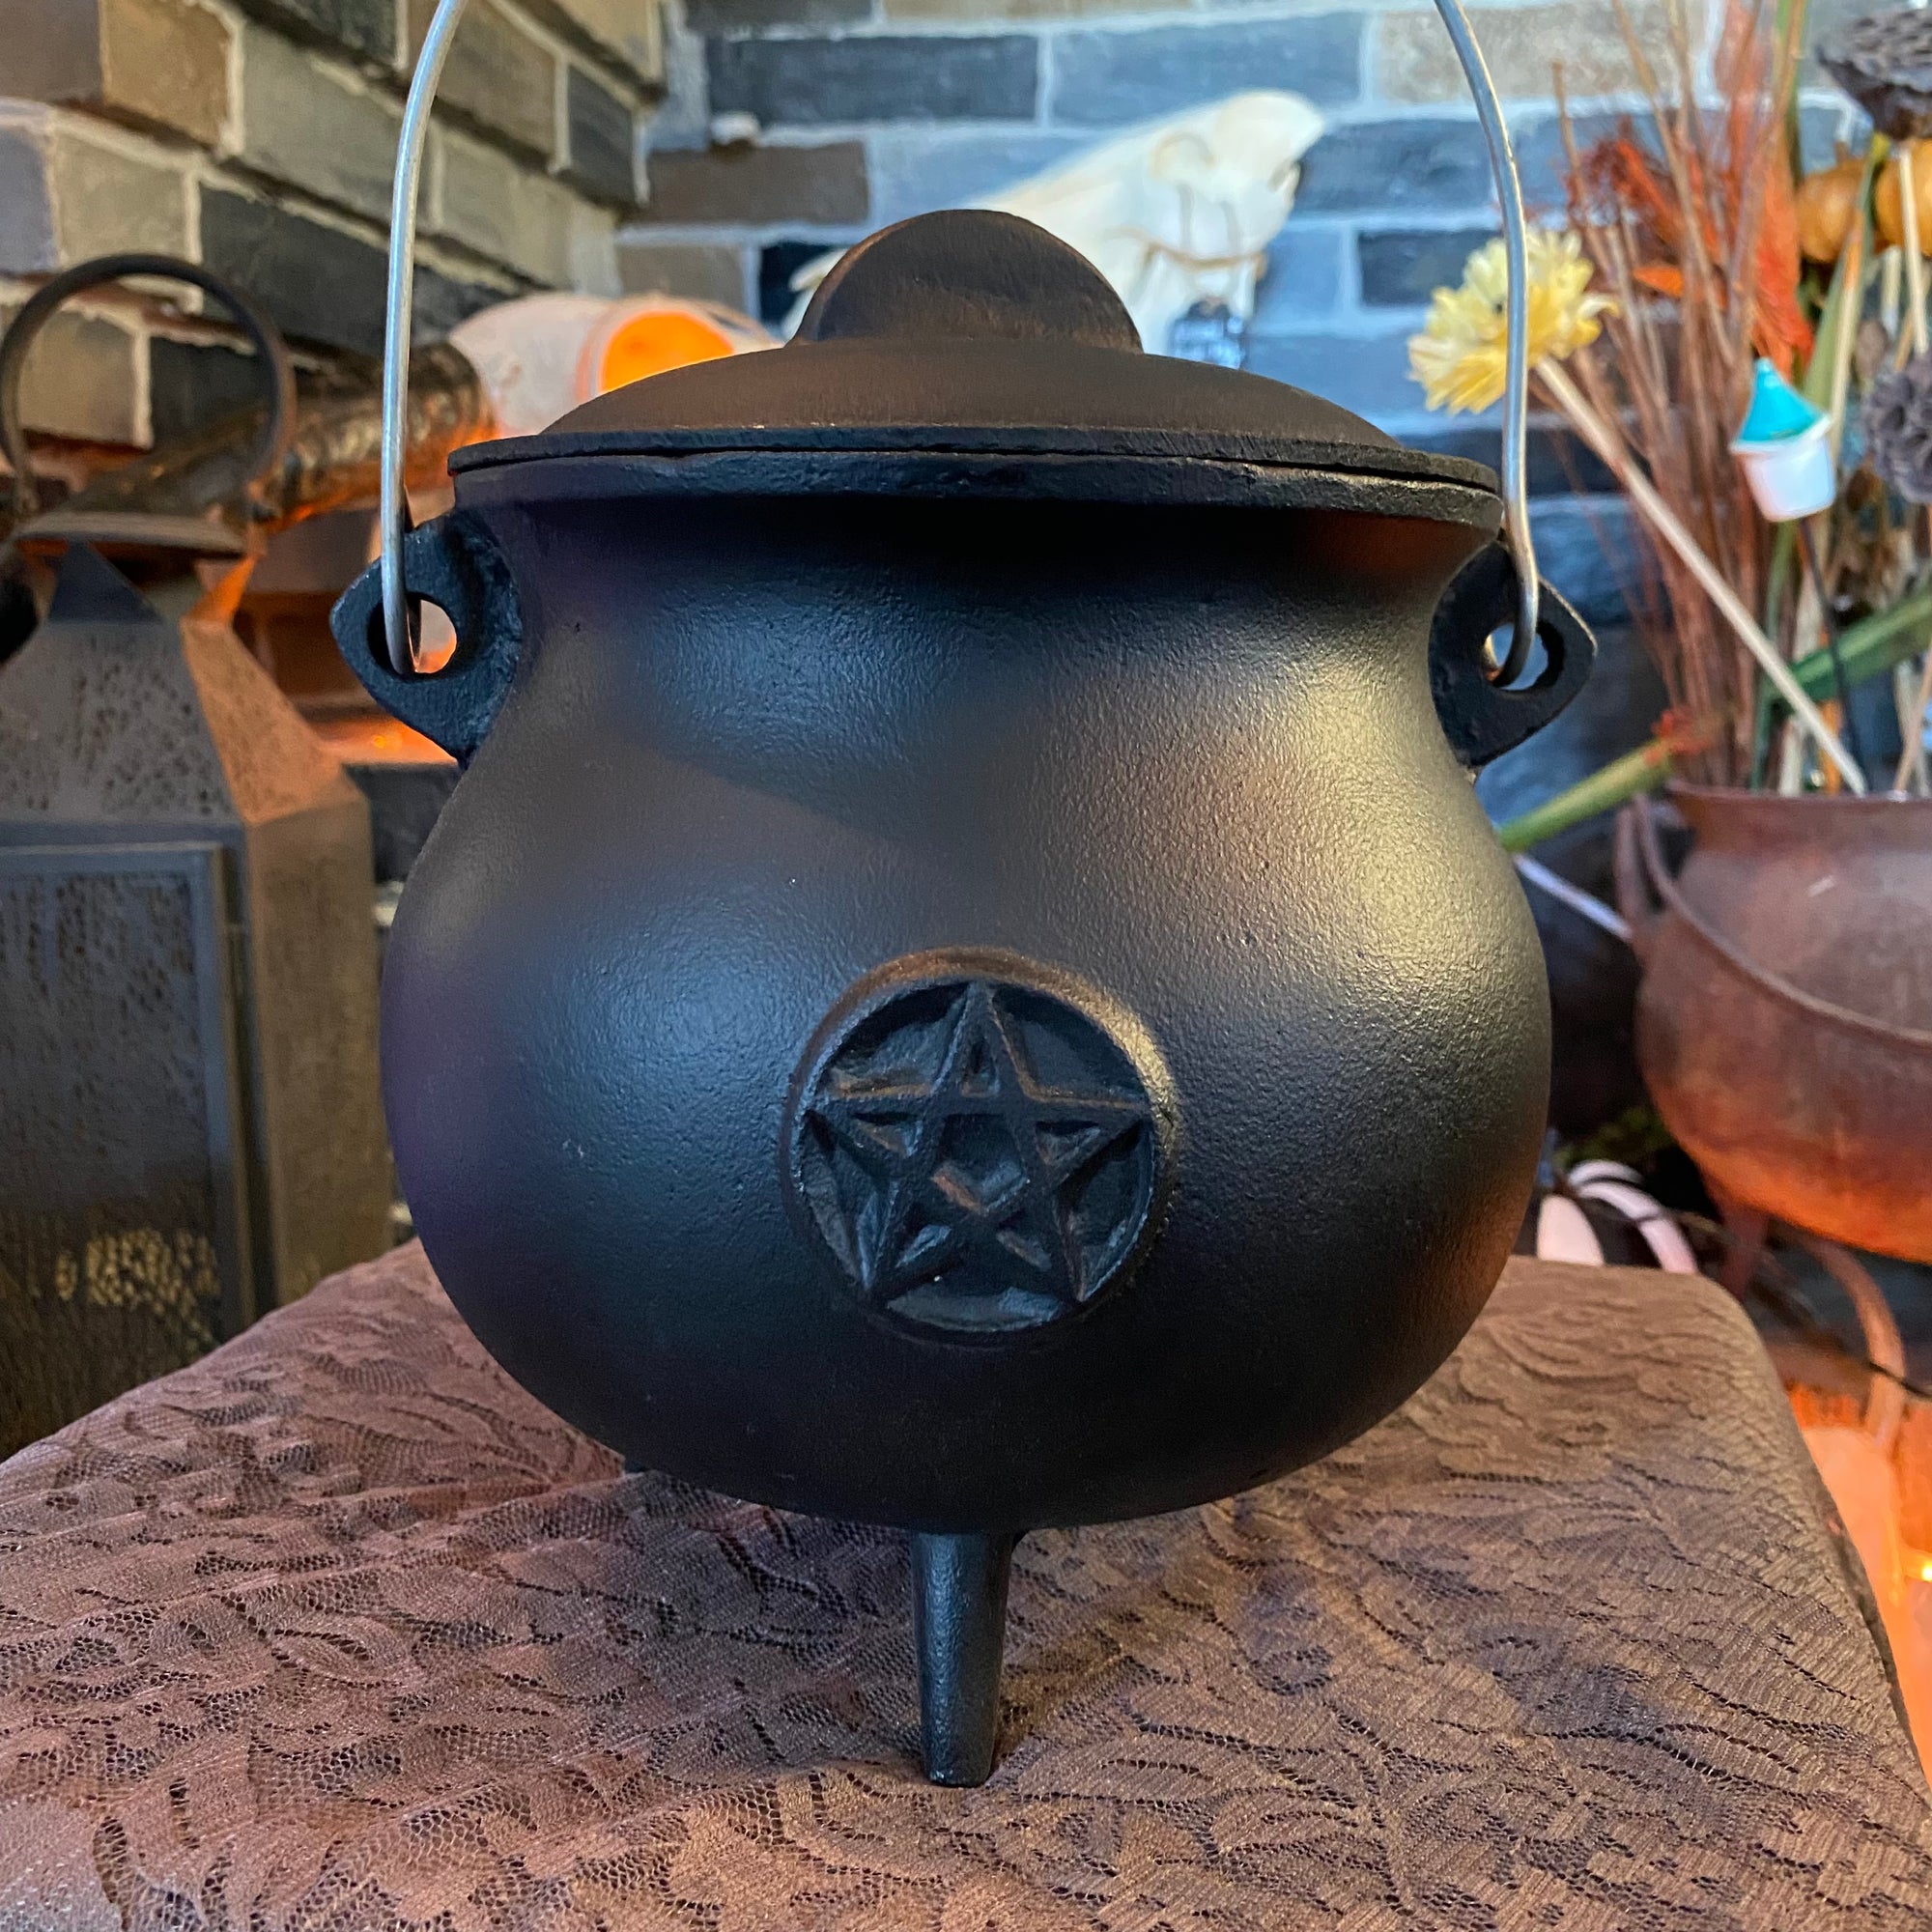 Large Black Cauldron Pentacle Cast Iron Cauldron - 8"